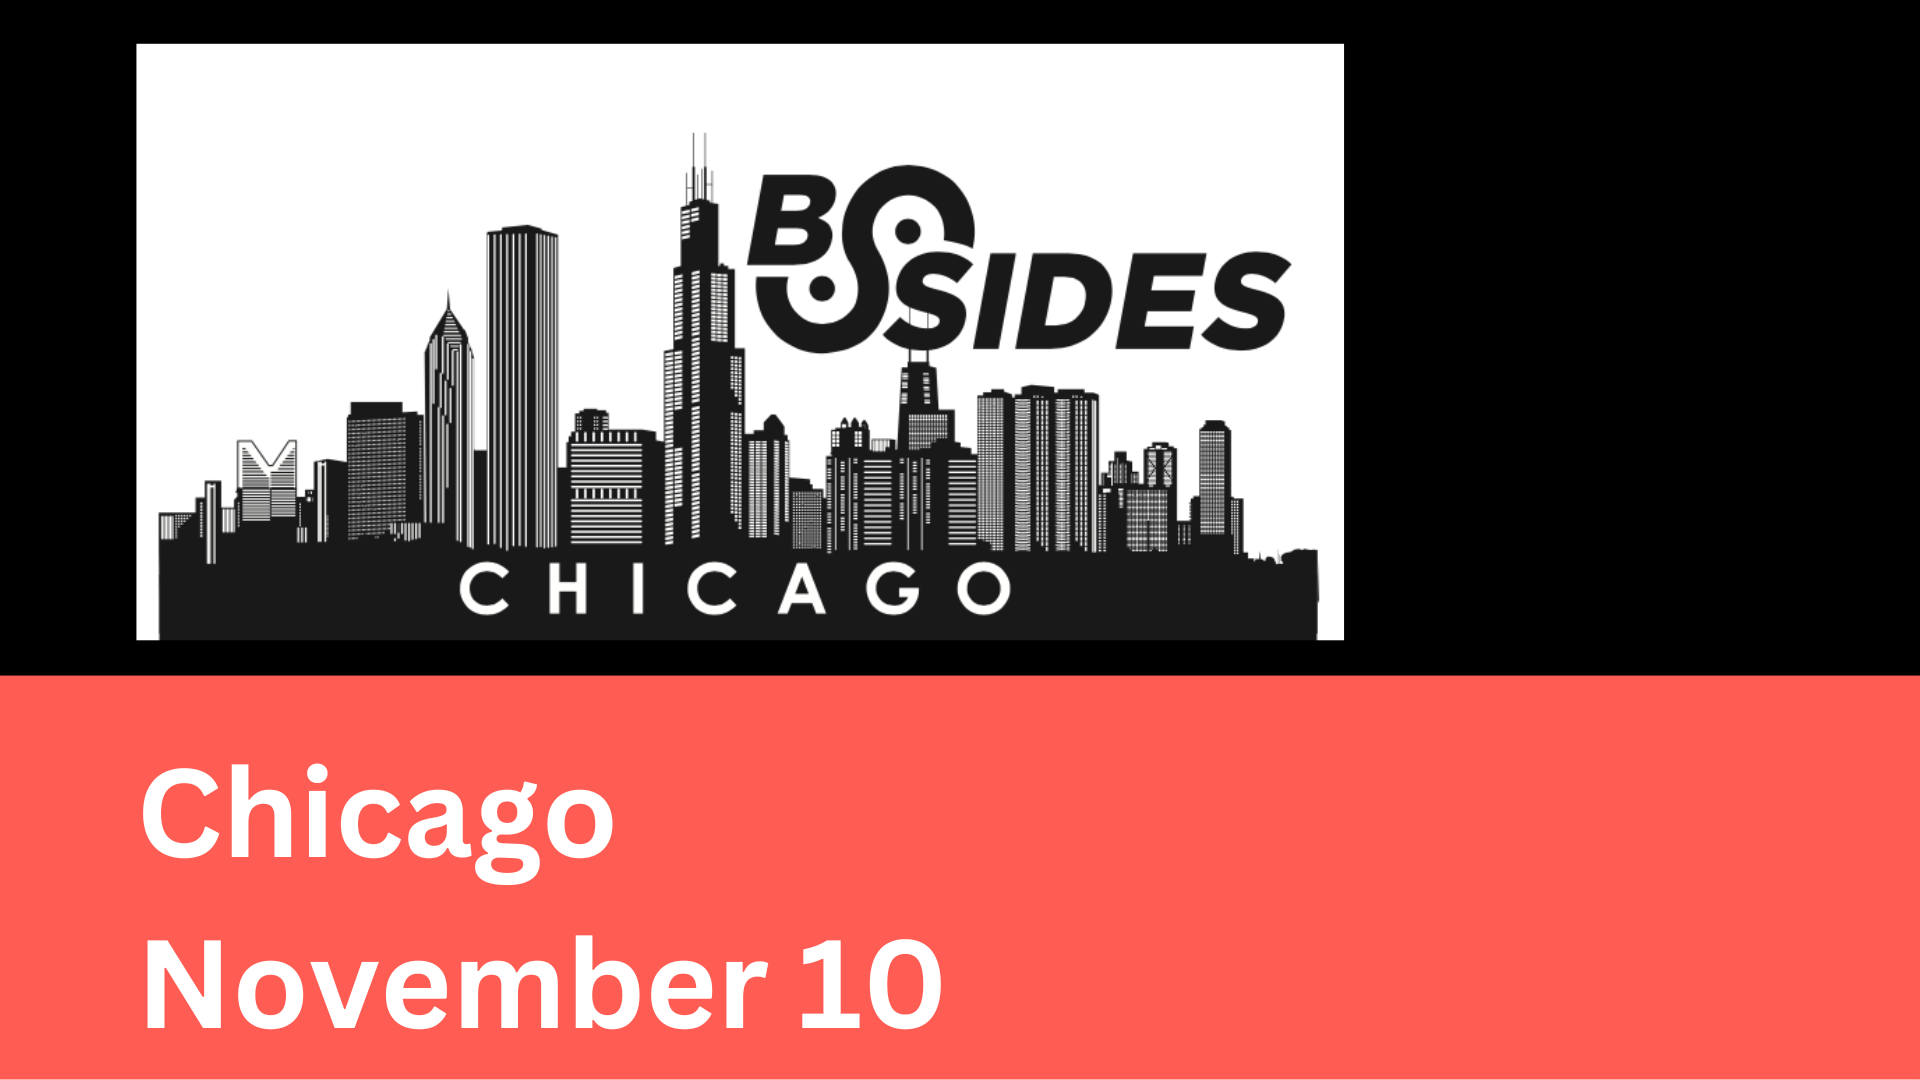 Chicago BSides